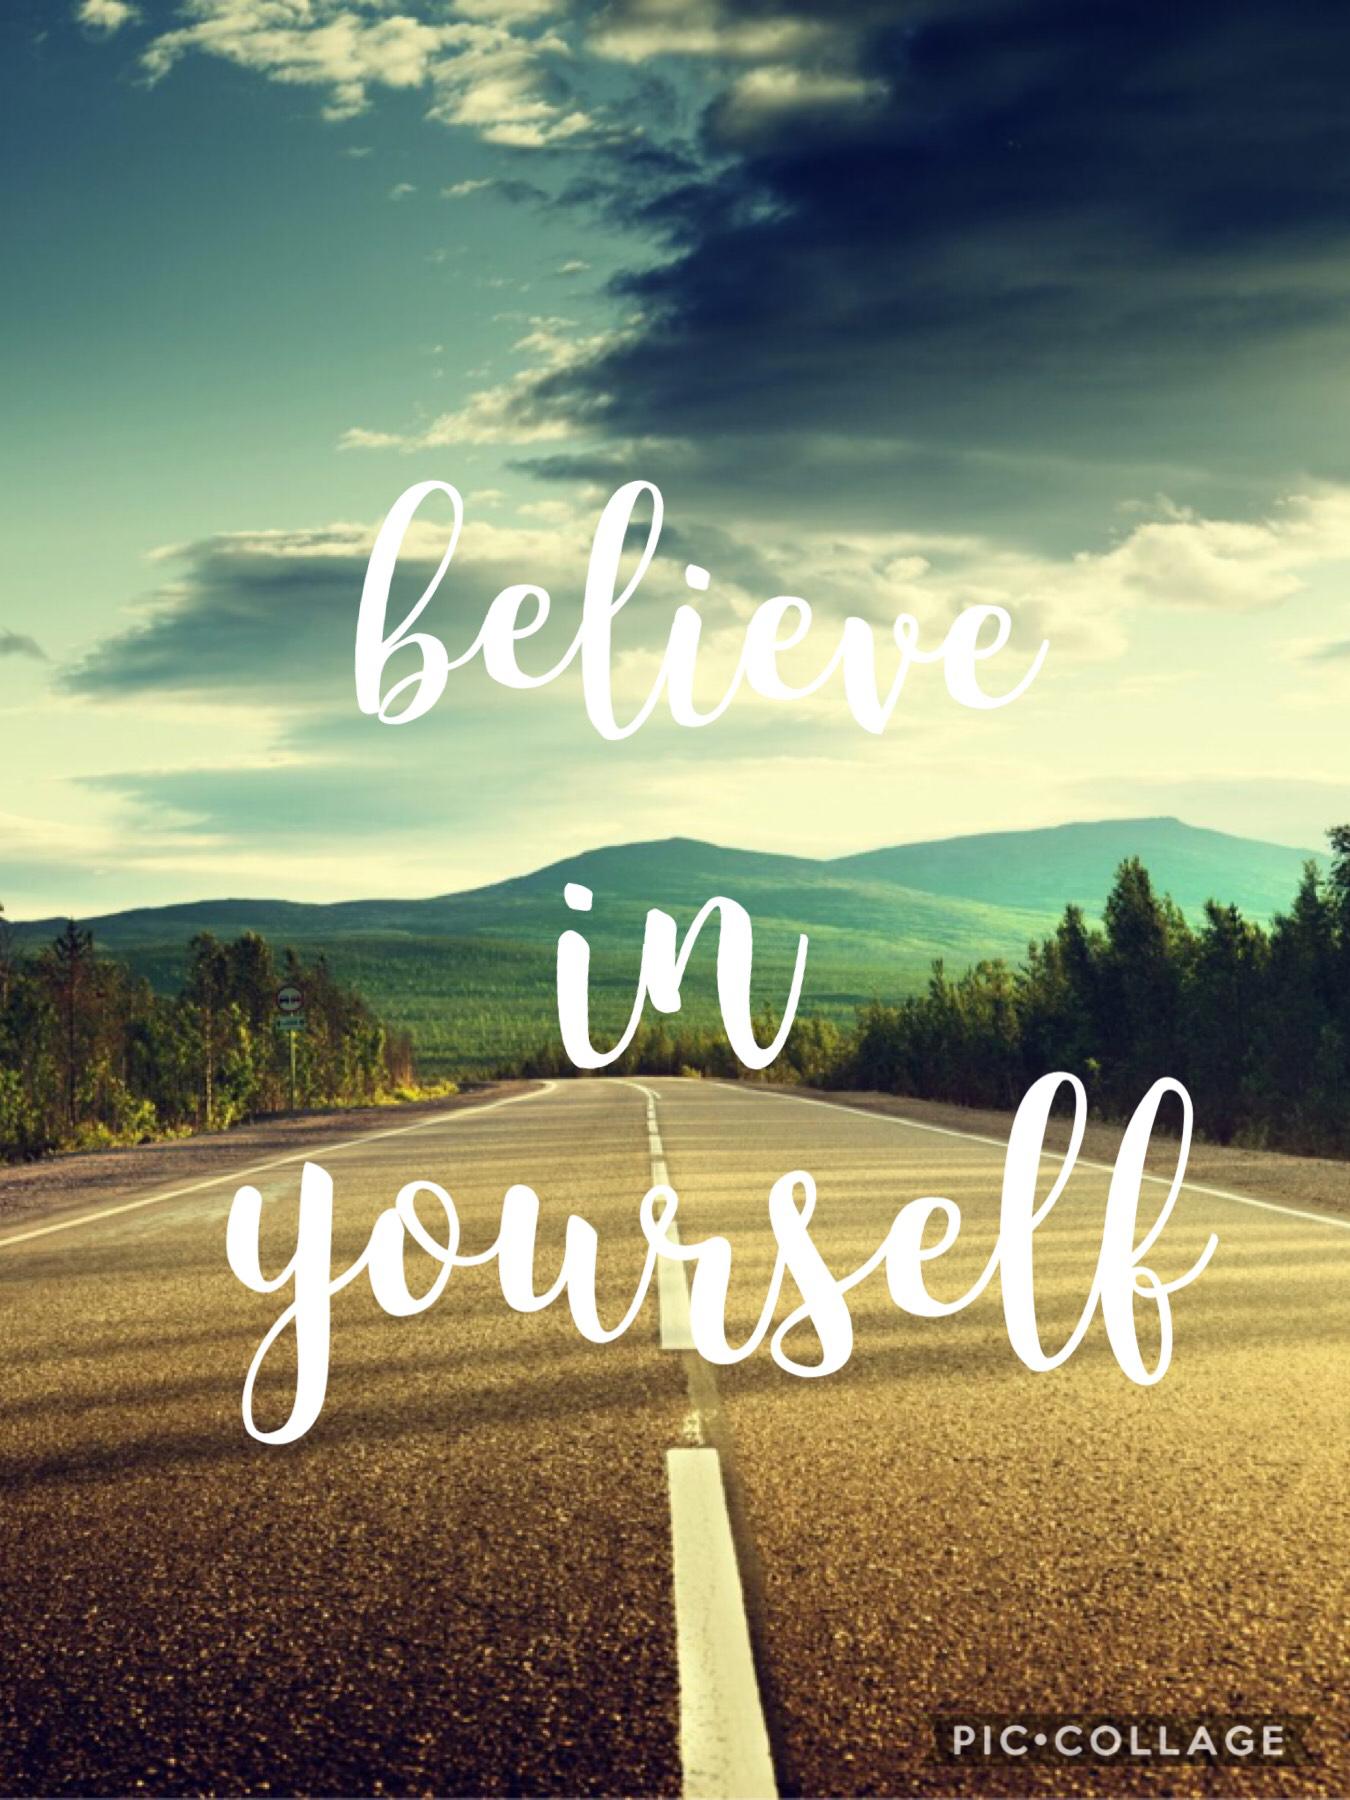 Believe in yourself!! Plz follow me!!